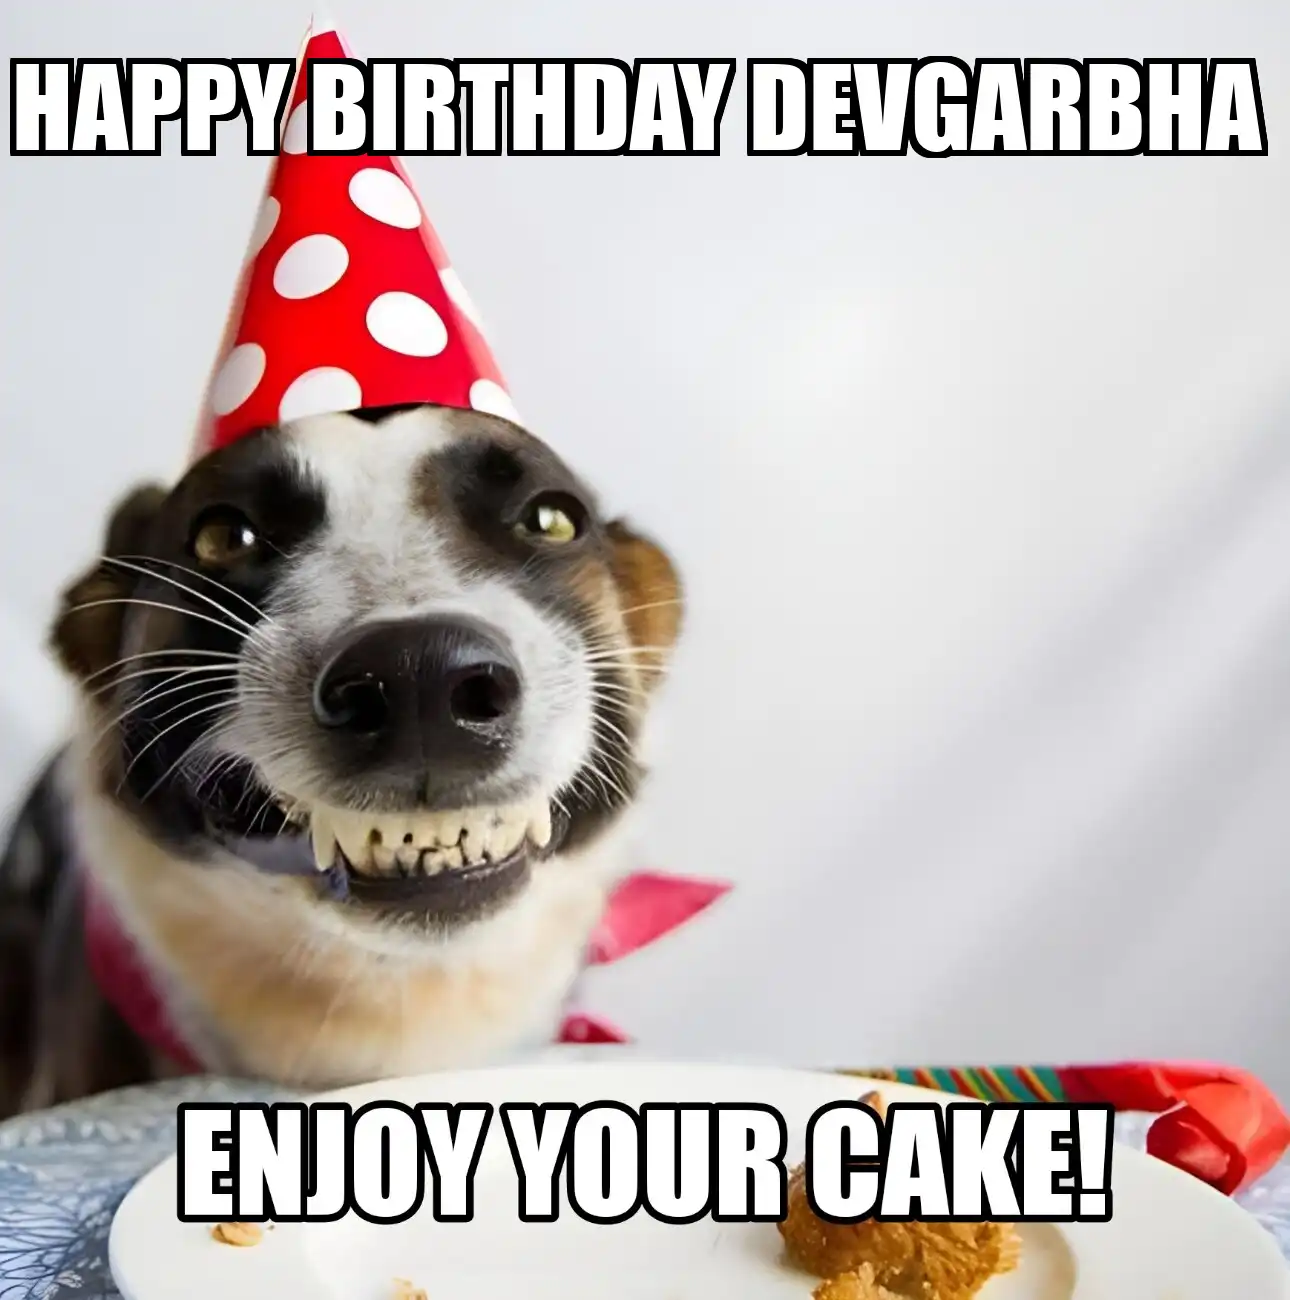 Happy Birthday Devgarbha Enjoy Your Cake Dog Meme